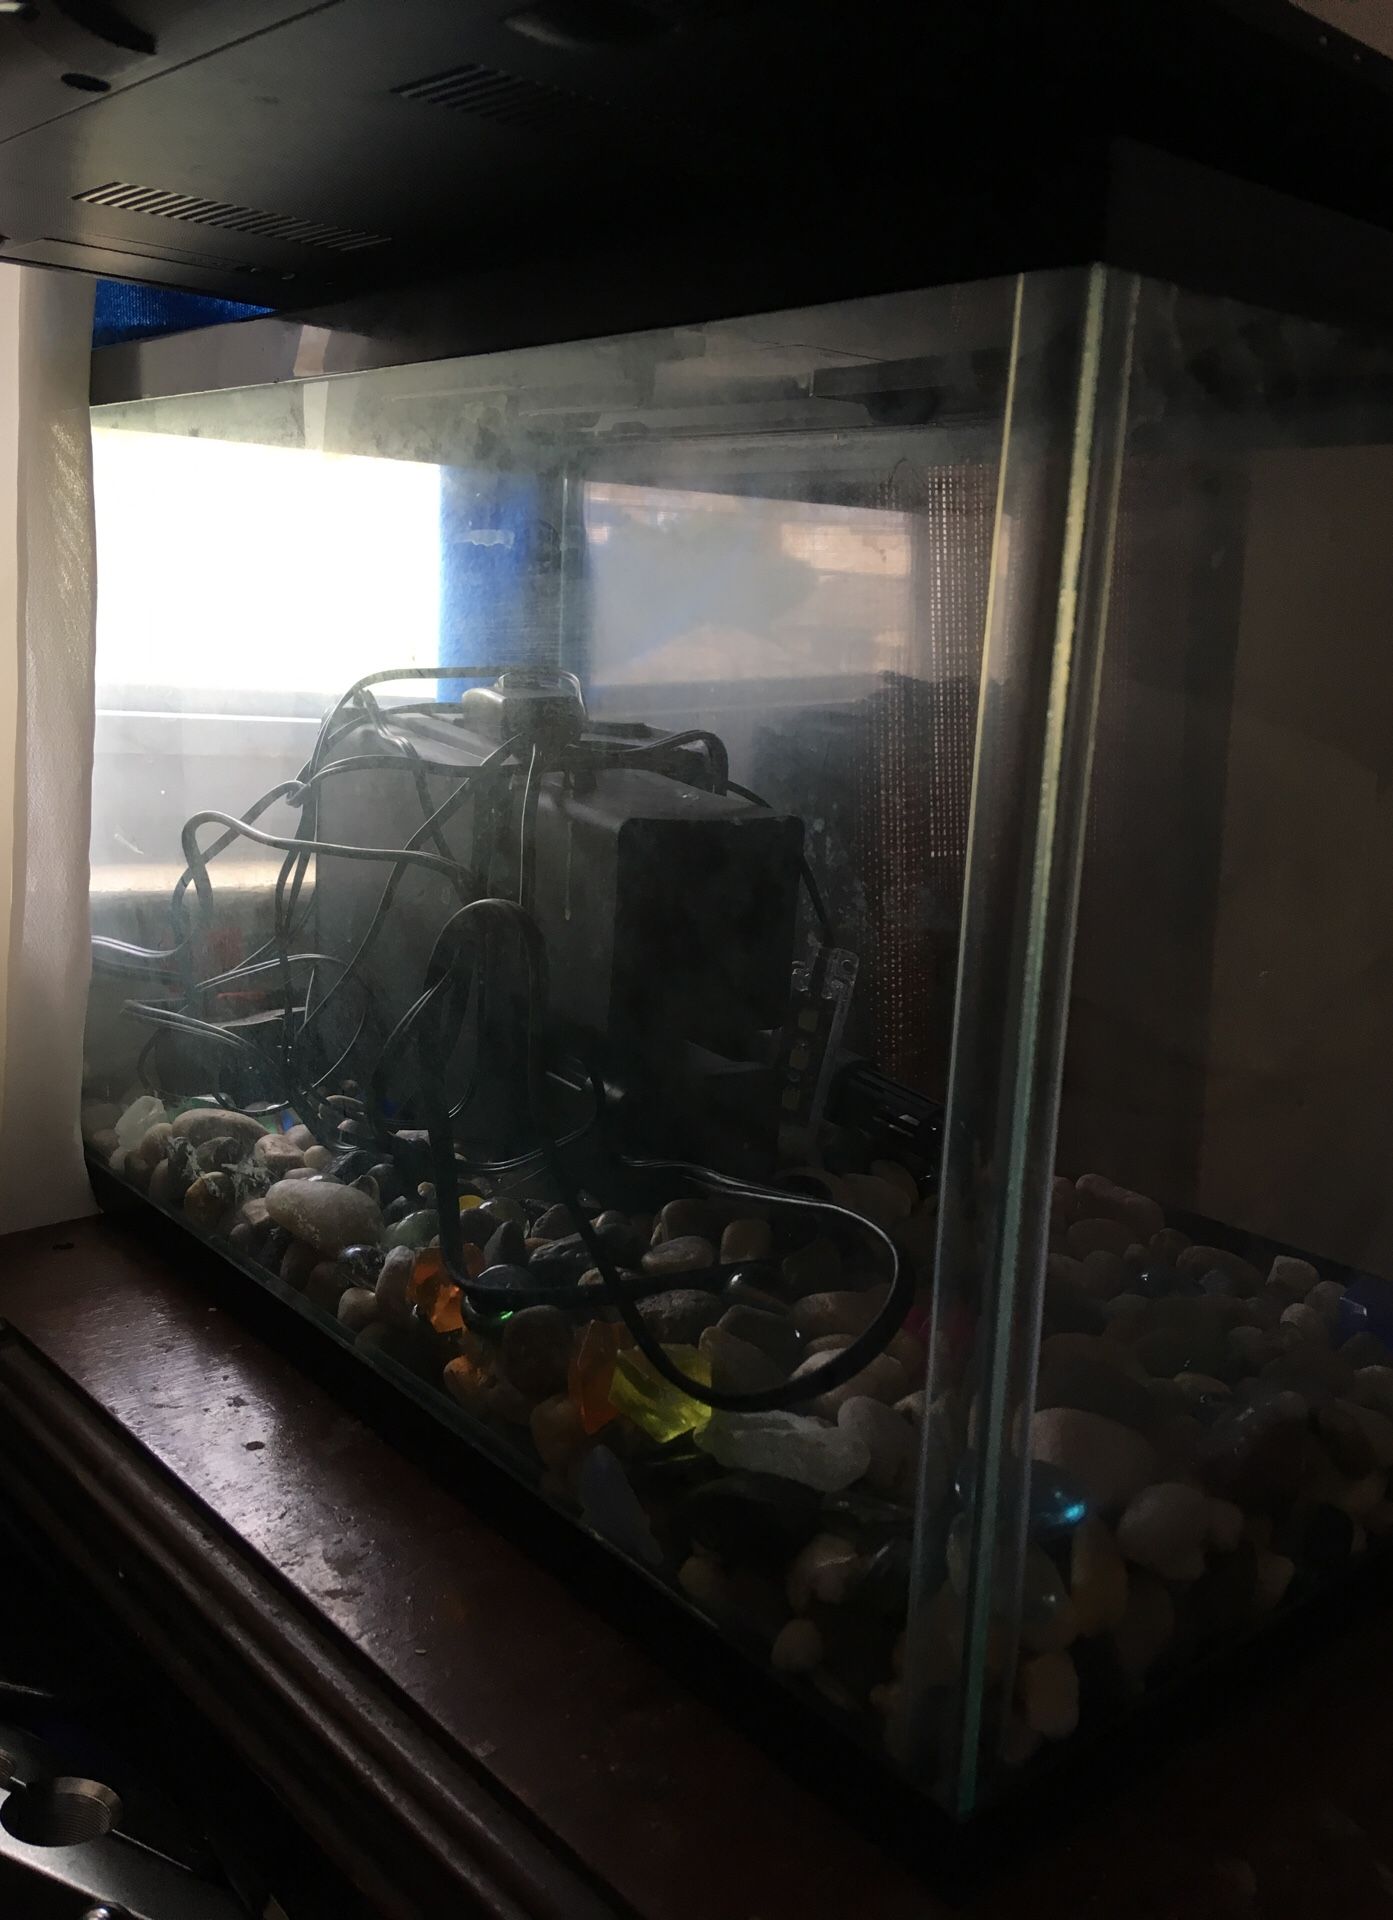 Medium size 15-20 gallon fish tank